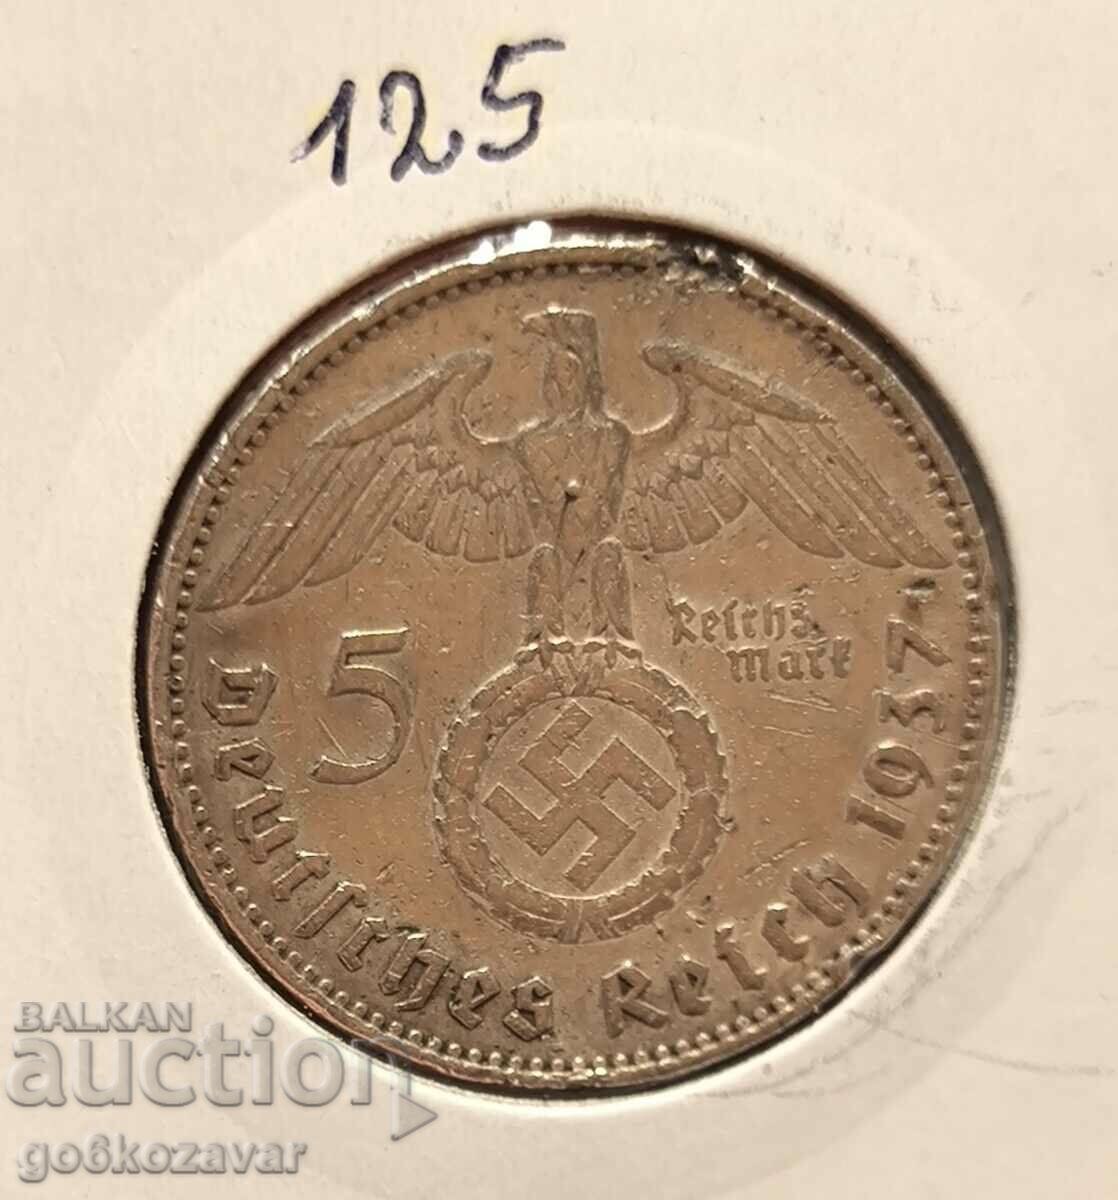 Γερμανία Τρίτο Ράιχ 5 γραμματόσημα 1937 Ασήμι!